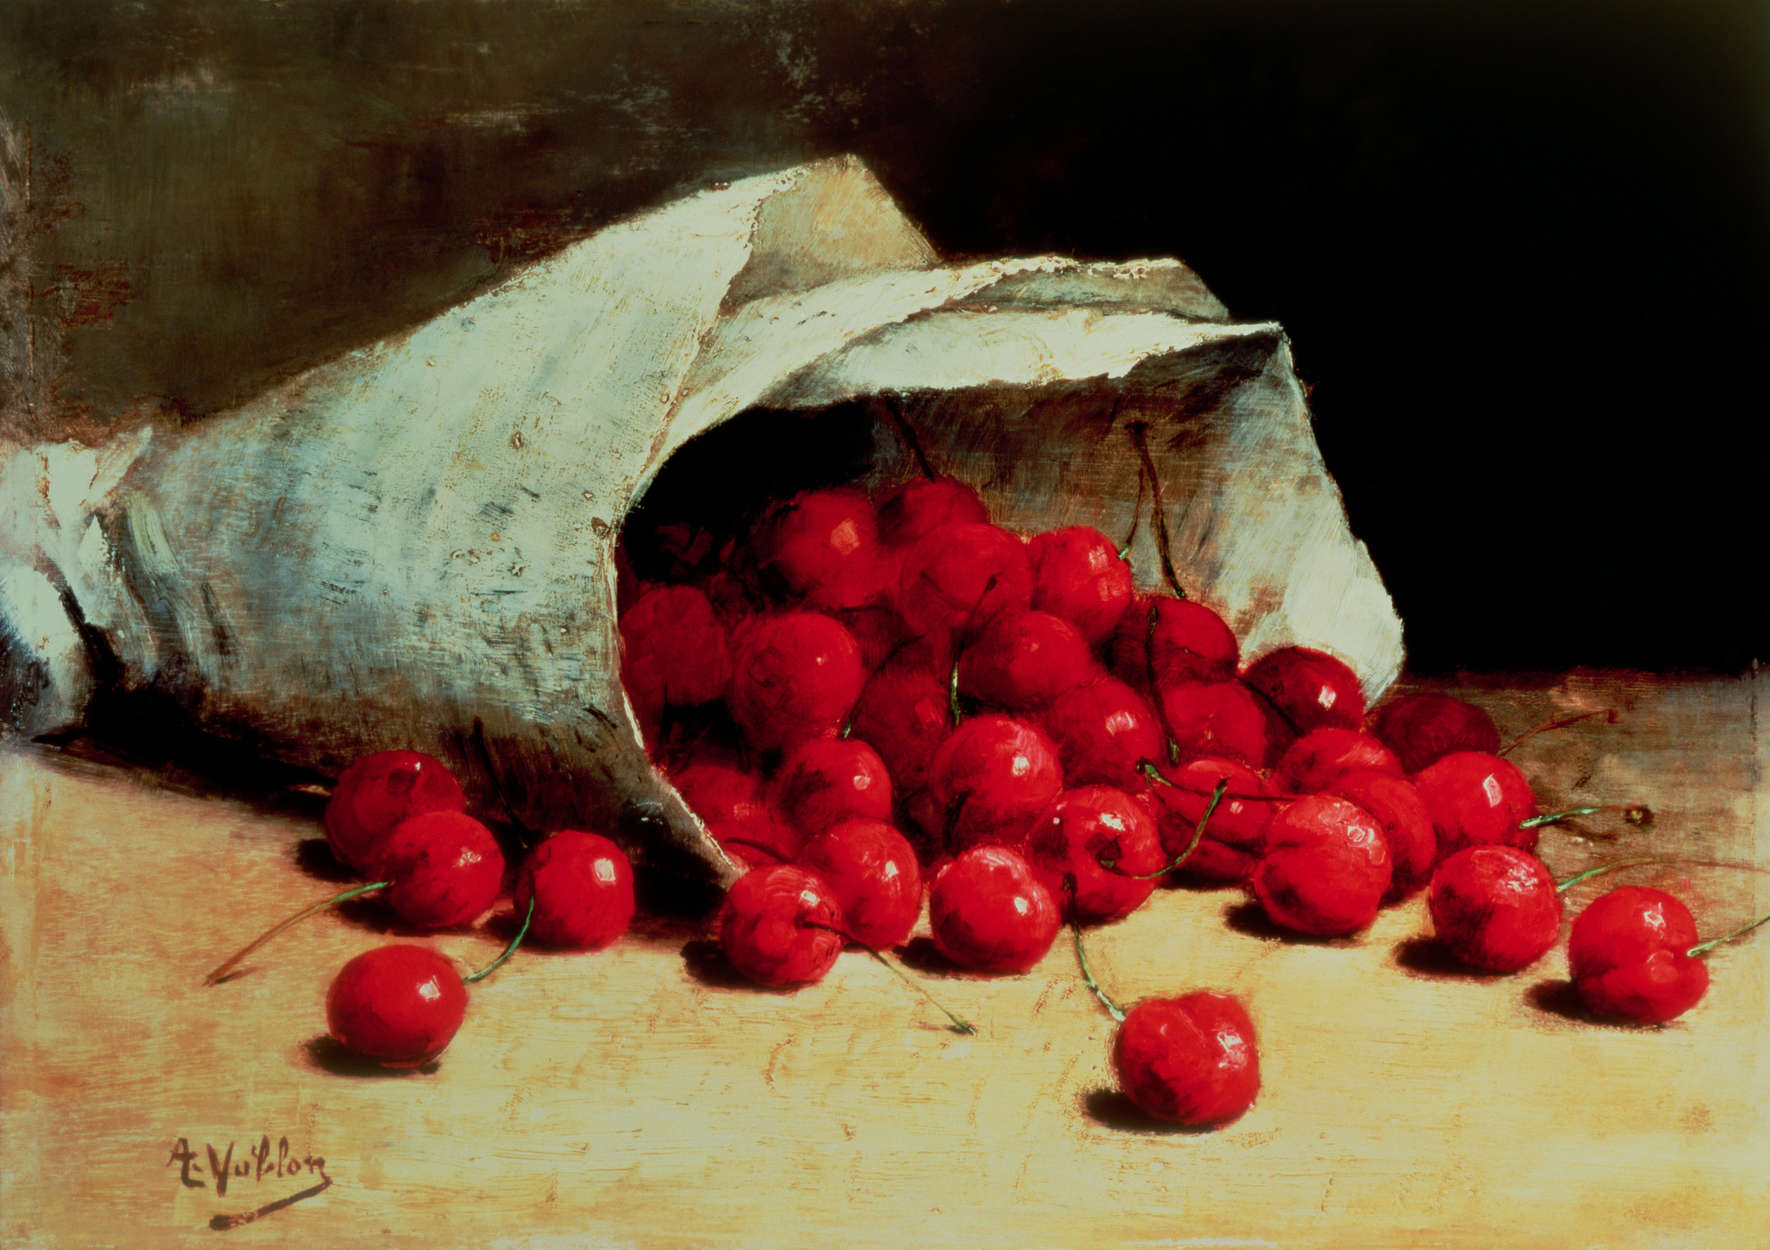             Mural "Una bolsa de cerezas derramada" de Antoine Vollon
        